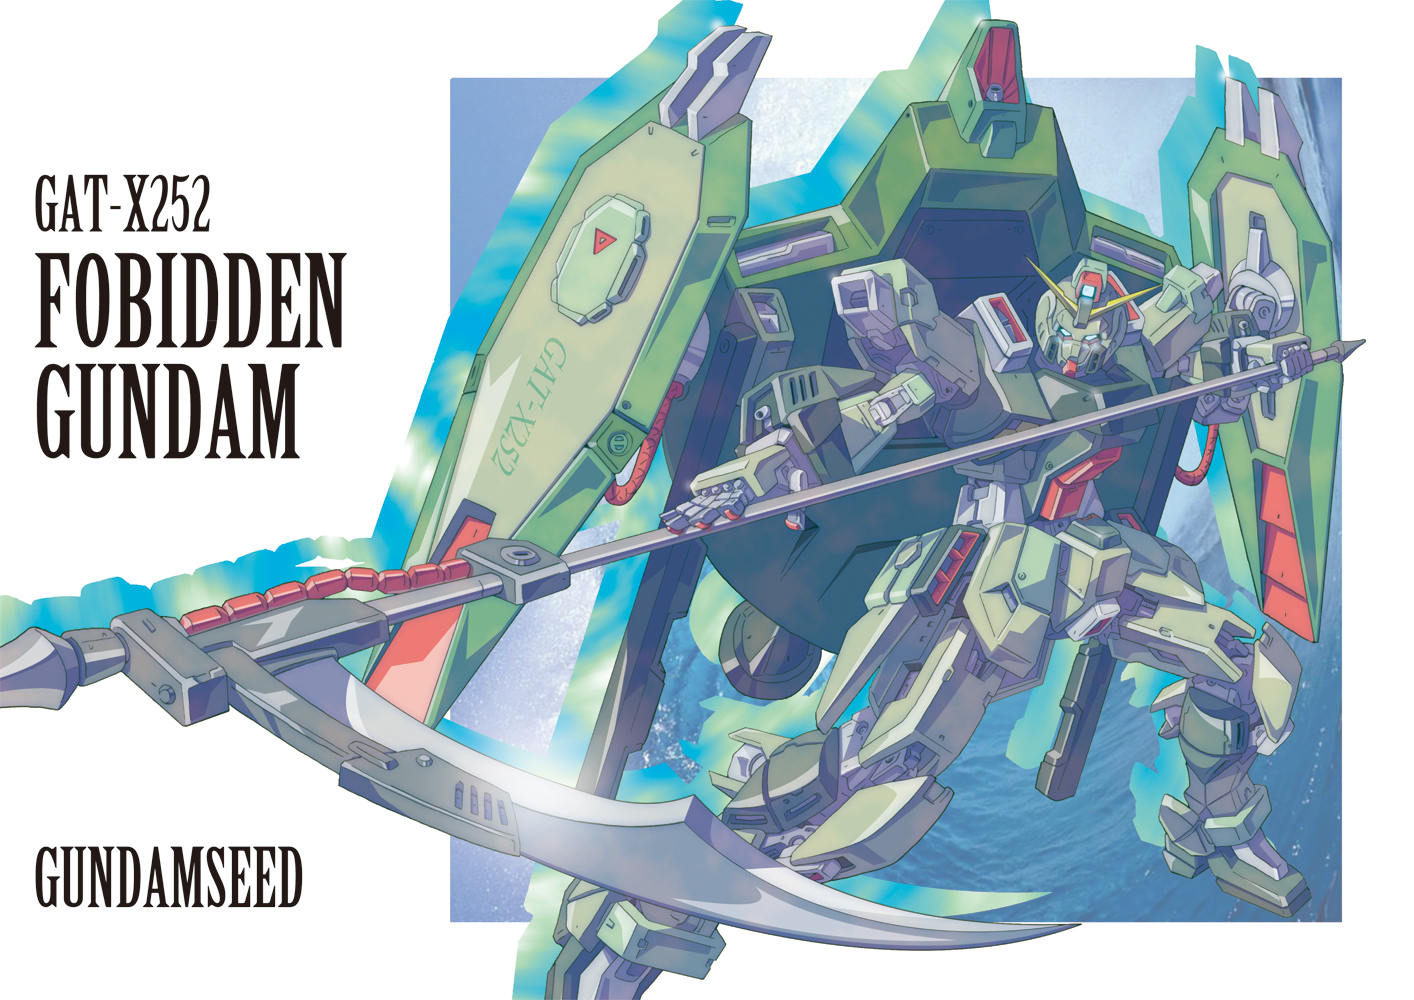 Anime 1414x1000 Forbidden Gundam anime mechs Gundam Mobile Suit Gundam SEED Super Robot Taisen artwork digital art fan art